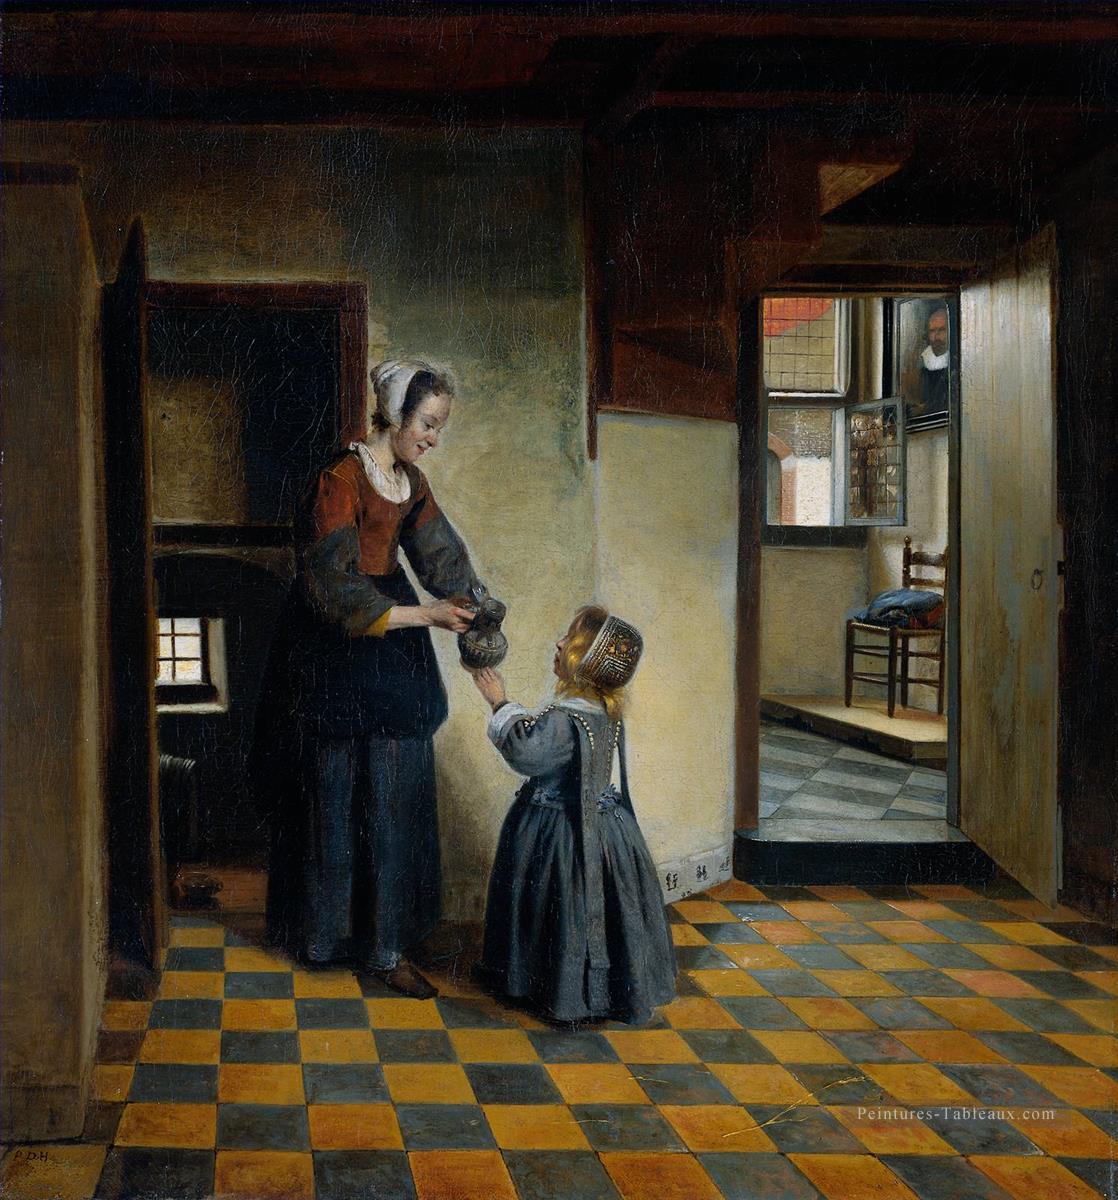 Femme avec un enfant dans un genre de garde manger Pieter de Hooch Peintures à l'huile